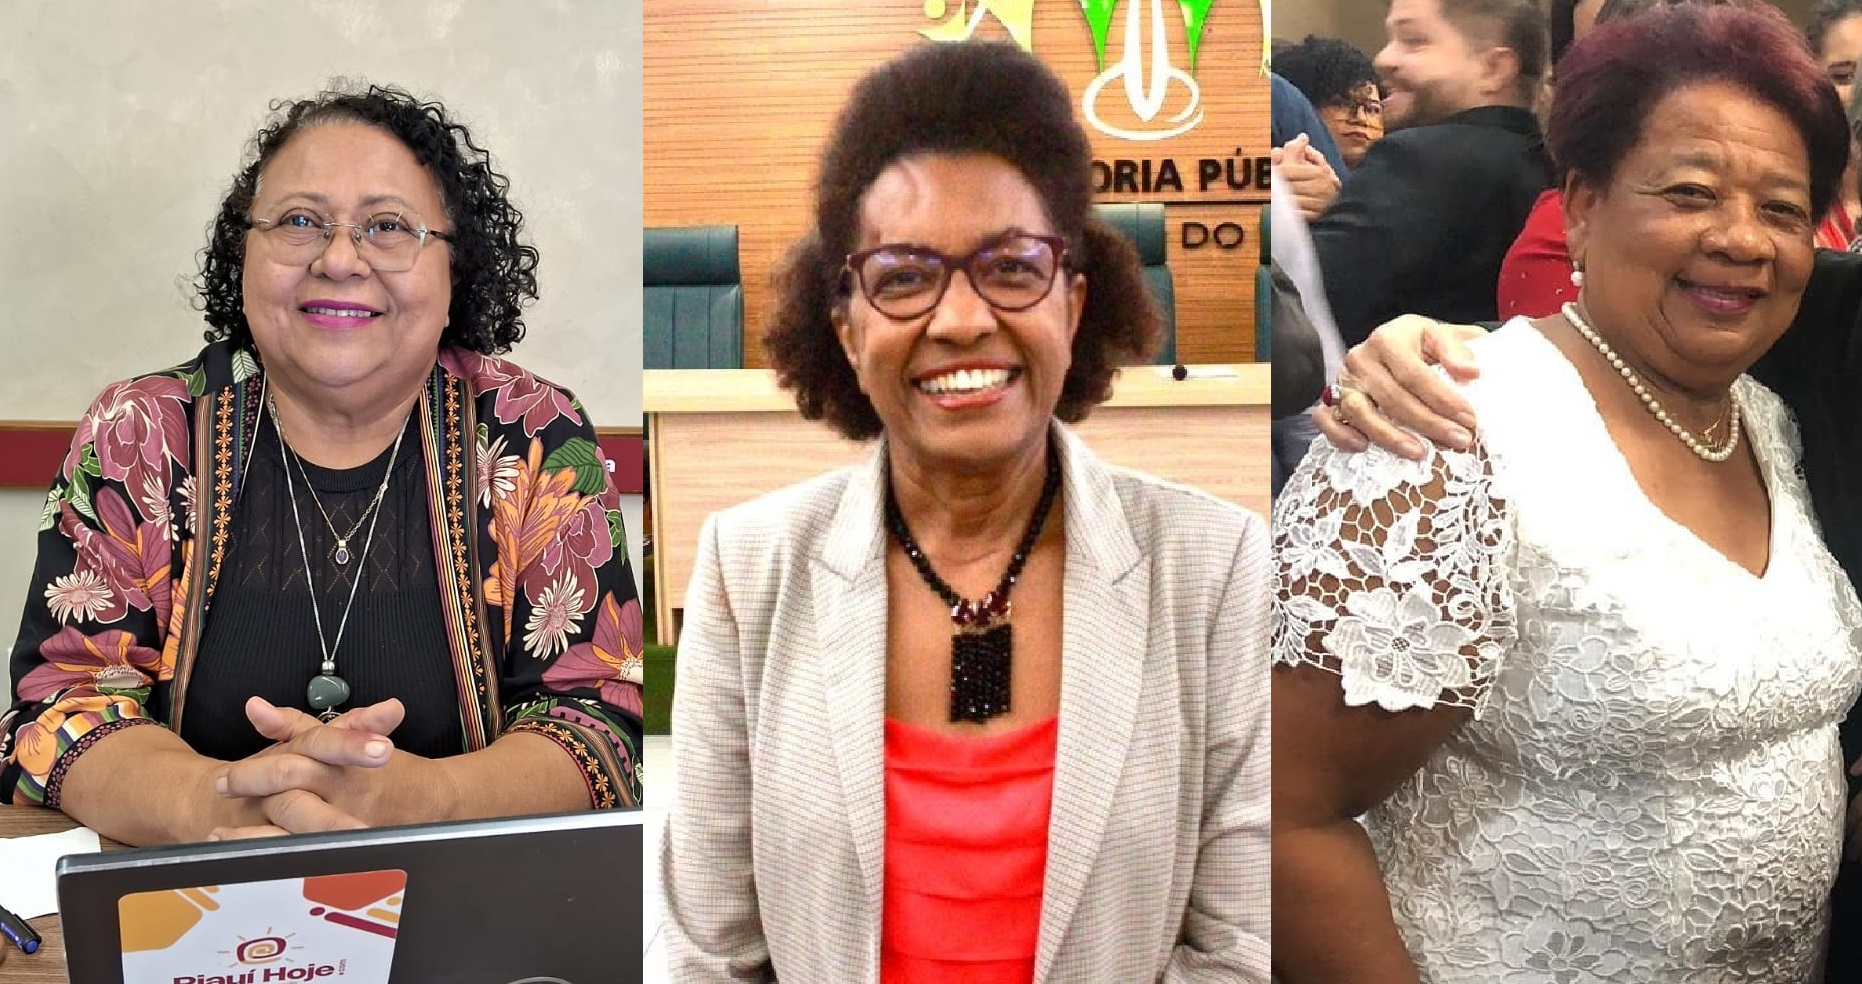 Teresinha Ferreira, Rosário Bezerra e Vilma Alves são as três mulheres convidadas para o bate-papo